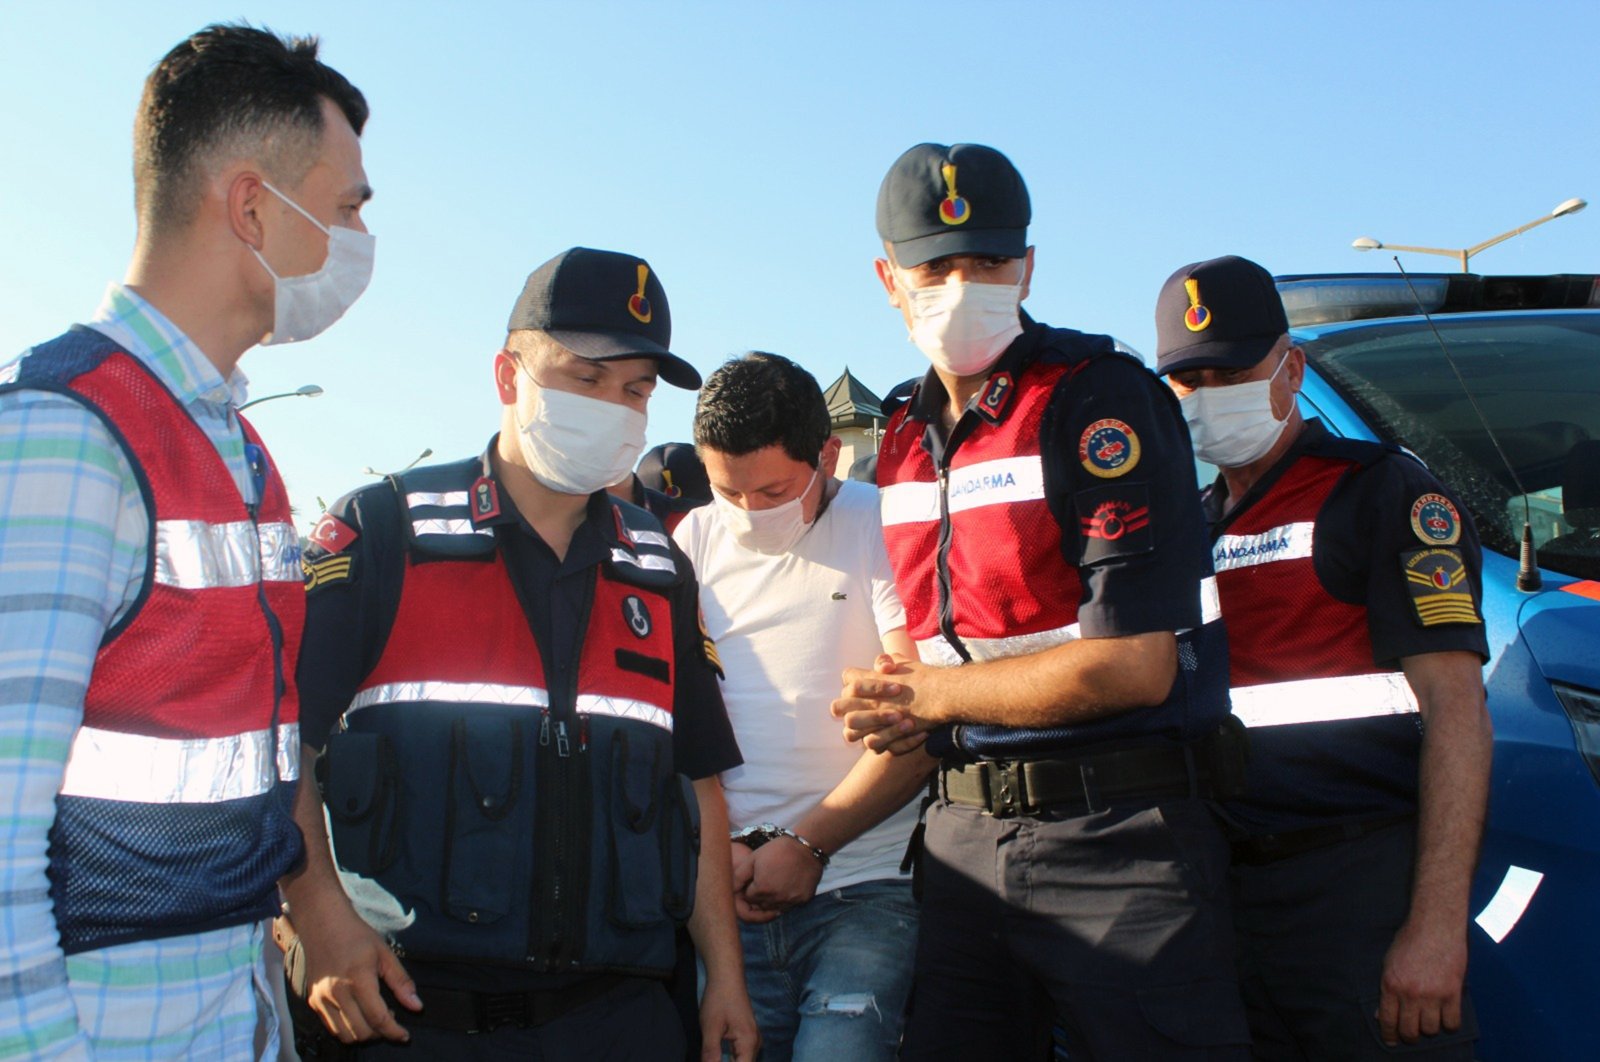 Gendarmerie officers escort C.M.A. in Muğla, southwestern Turkey, July 21, 2020 (IHA Photo)